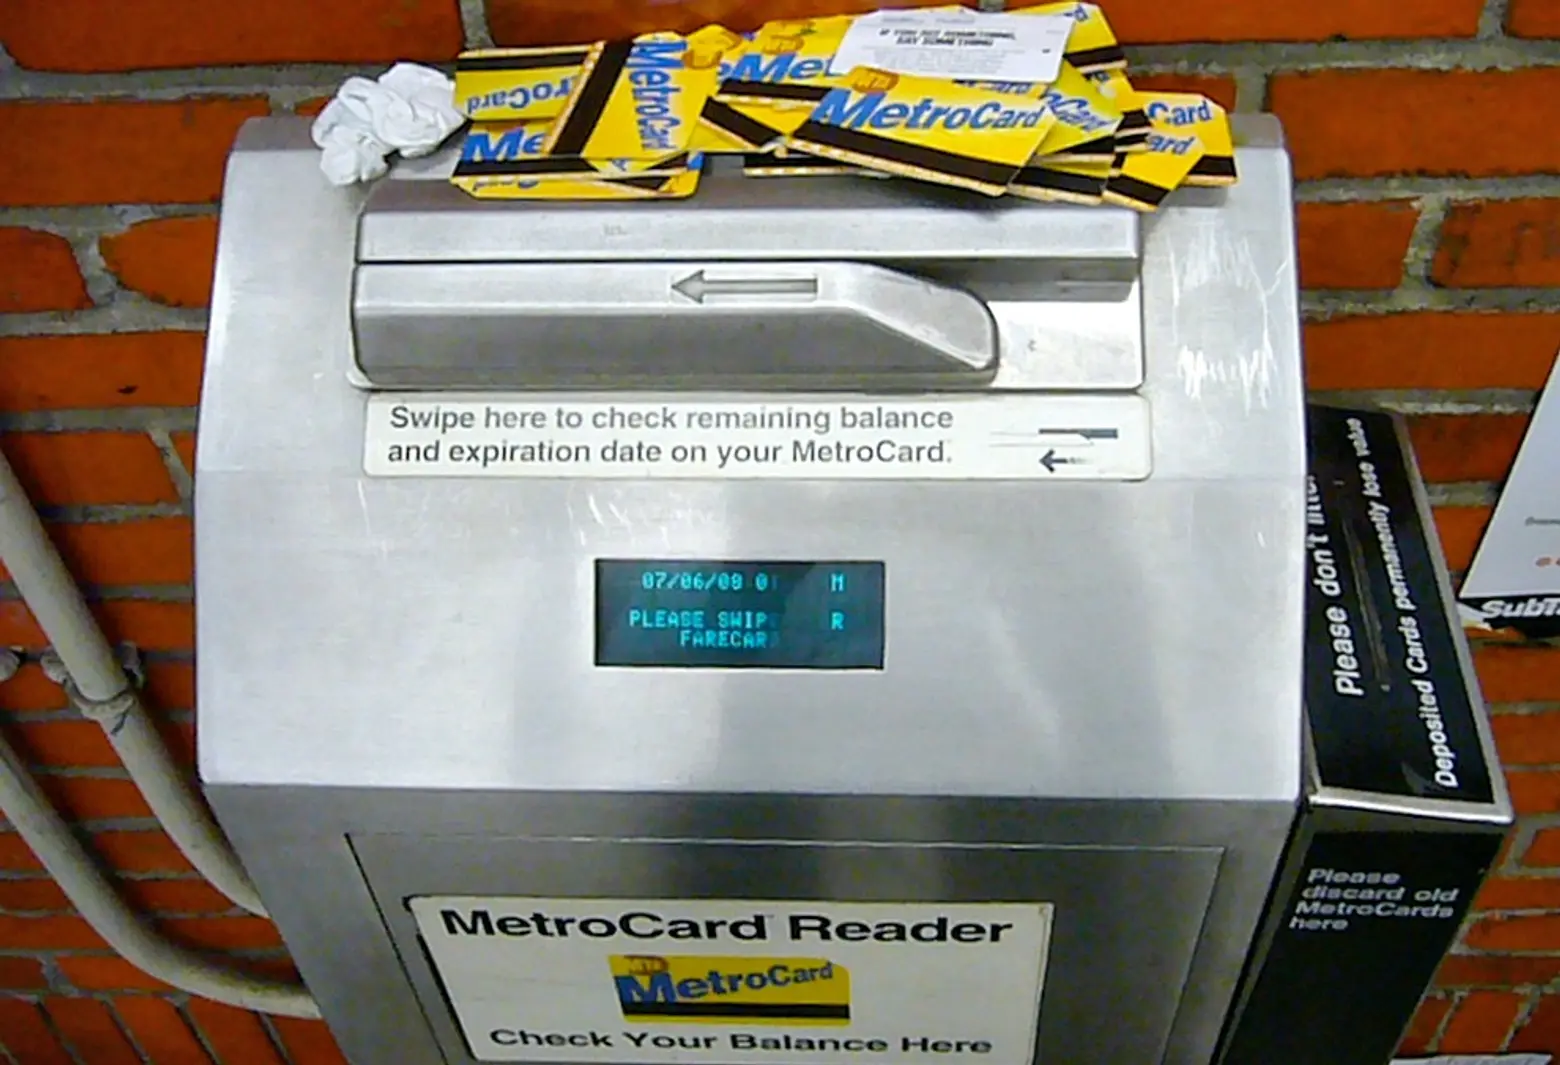 POLL: Will You Miss the MetroCard Swipe?